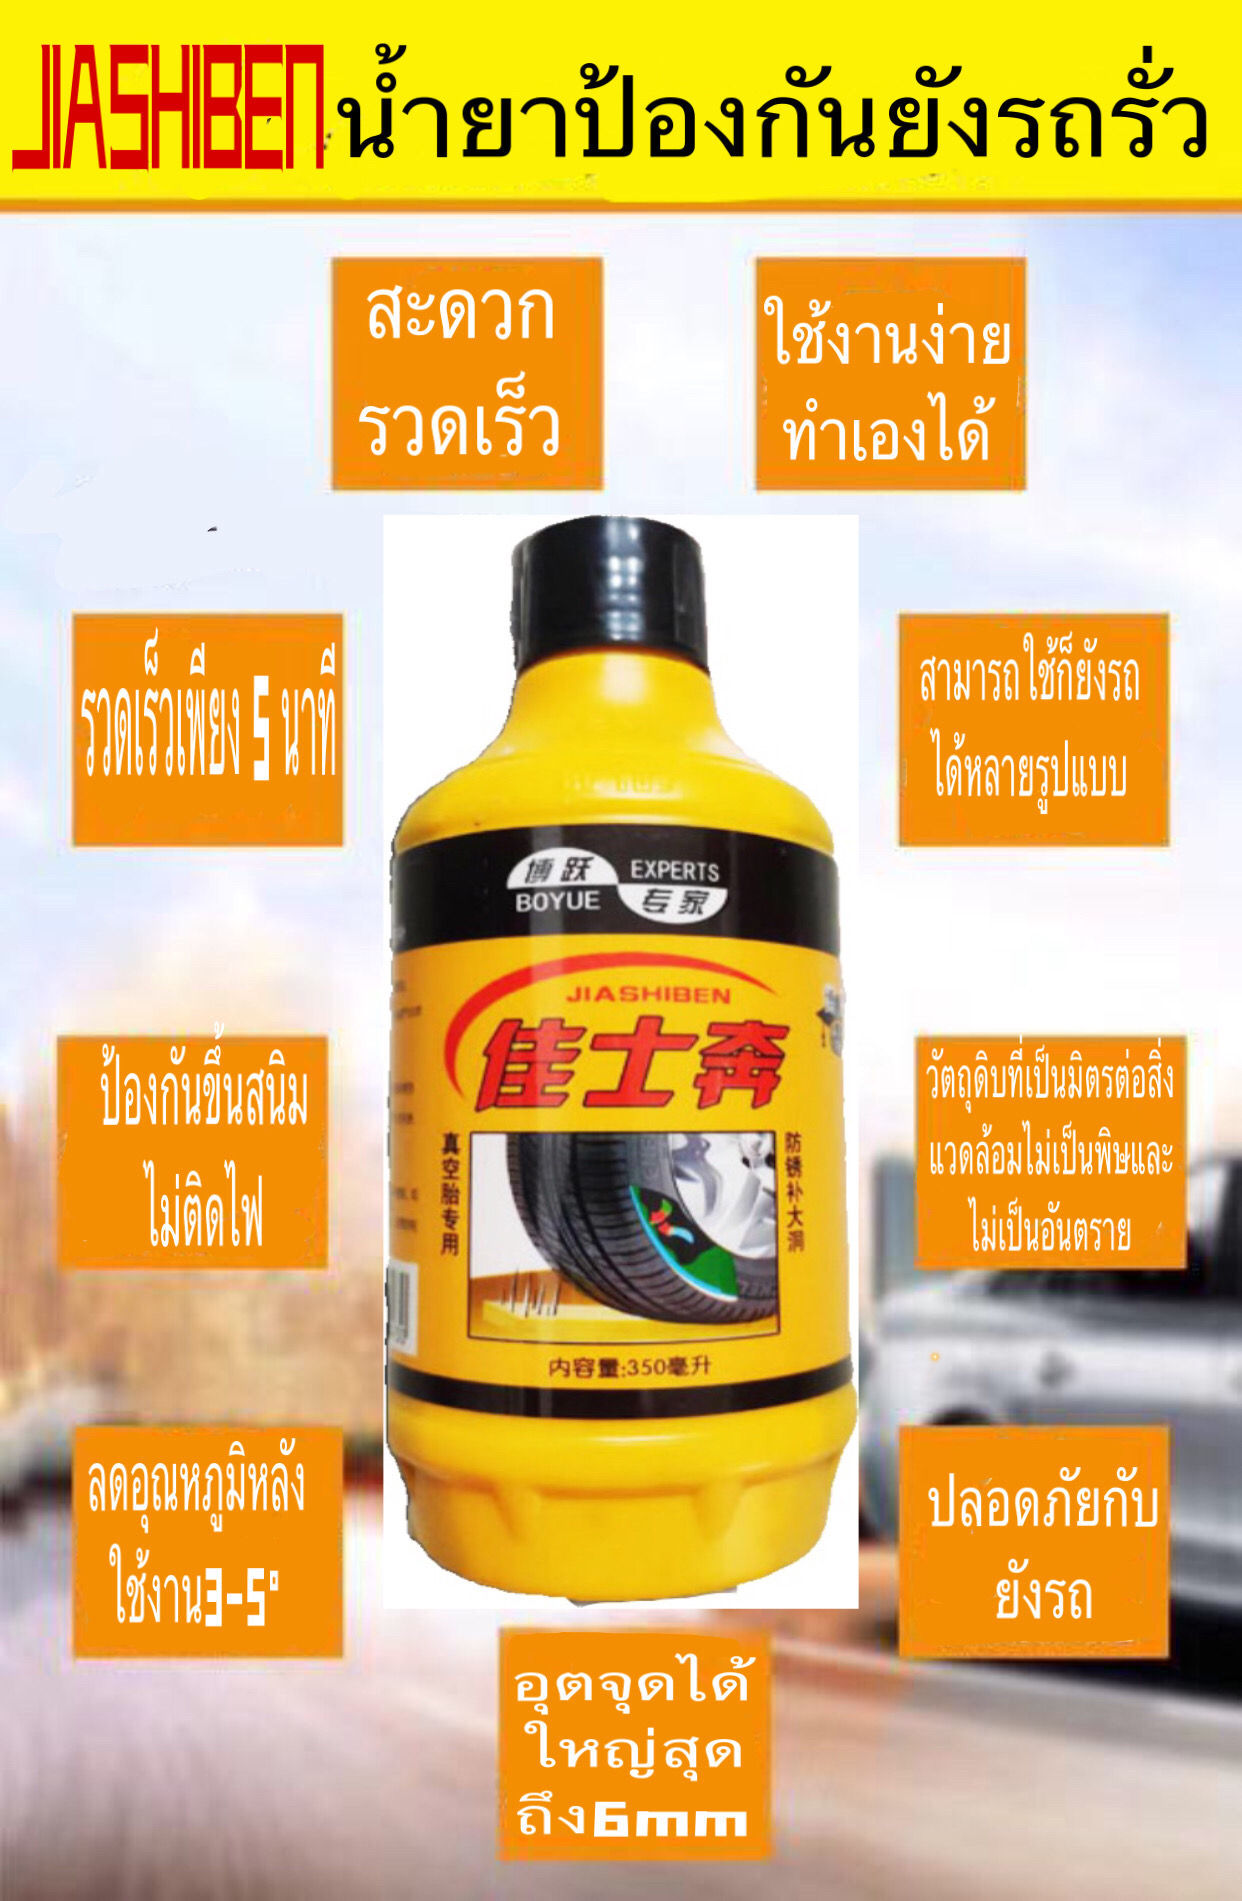 ส่งจากเทศไทย น้ำยาป้องกันยางรถรั่ว ยางแบน น้ำยาปะยาง สำหรับจักรยานยนต์ น้ำยาอุดยางรั่วฉุกเฉิน JIASHIBEN สะดวก ใช้ดีมั่นใจ